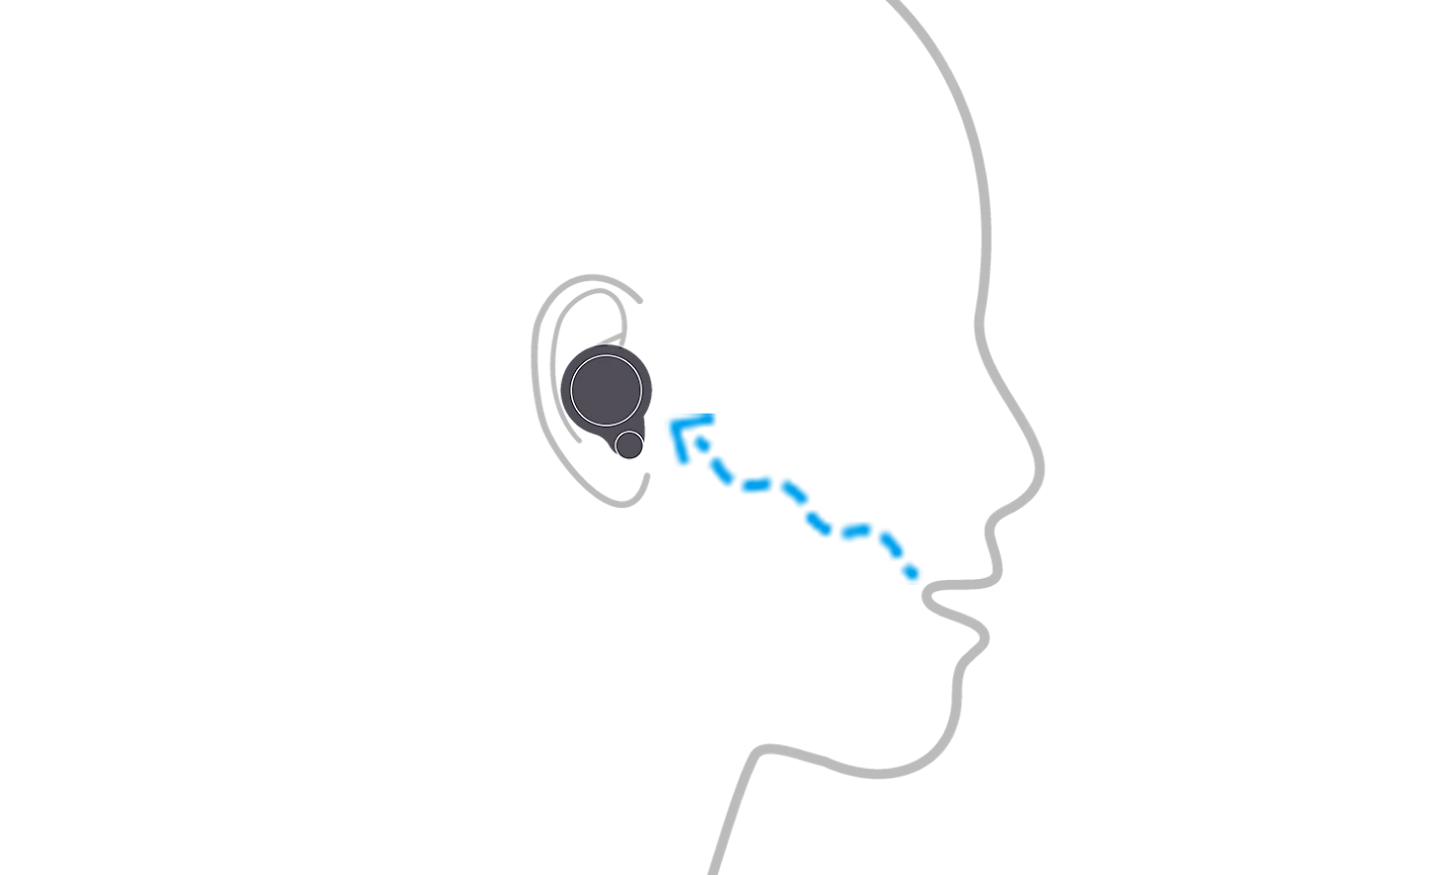 Abbildung einer Person mit WF-1000XM4 Kopfhörern, die zeigt, wie der Knochenleitungssensor Stimmvibrationen erkennt